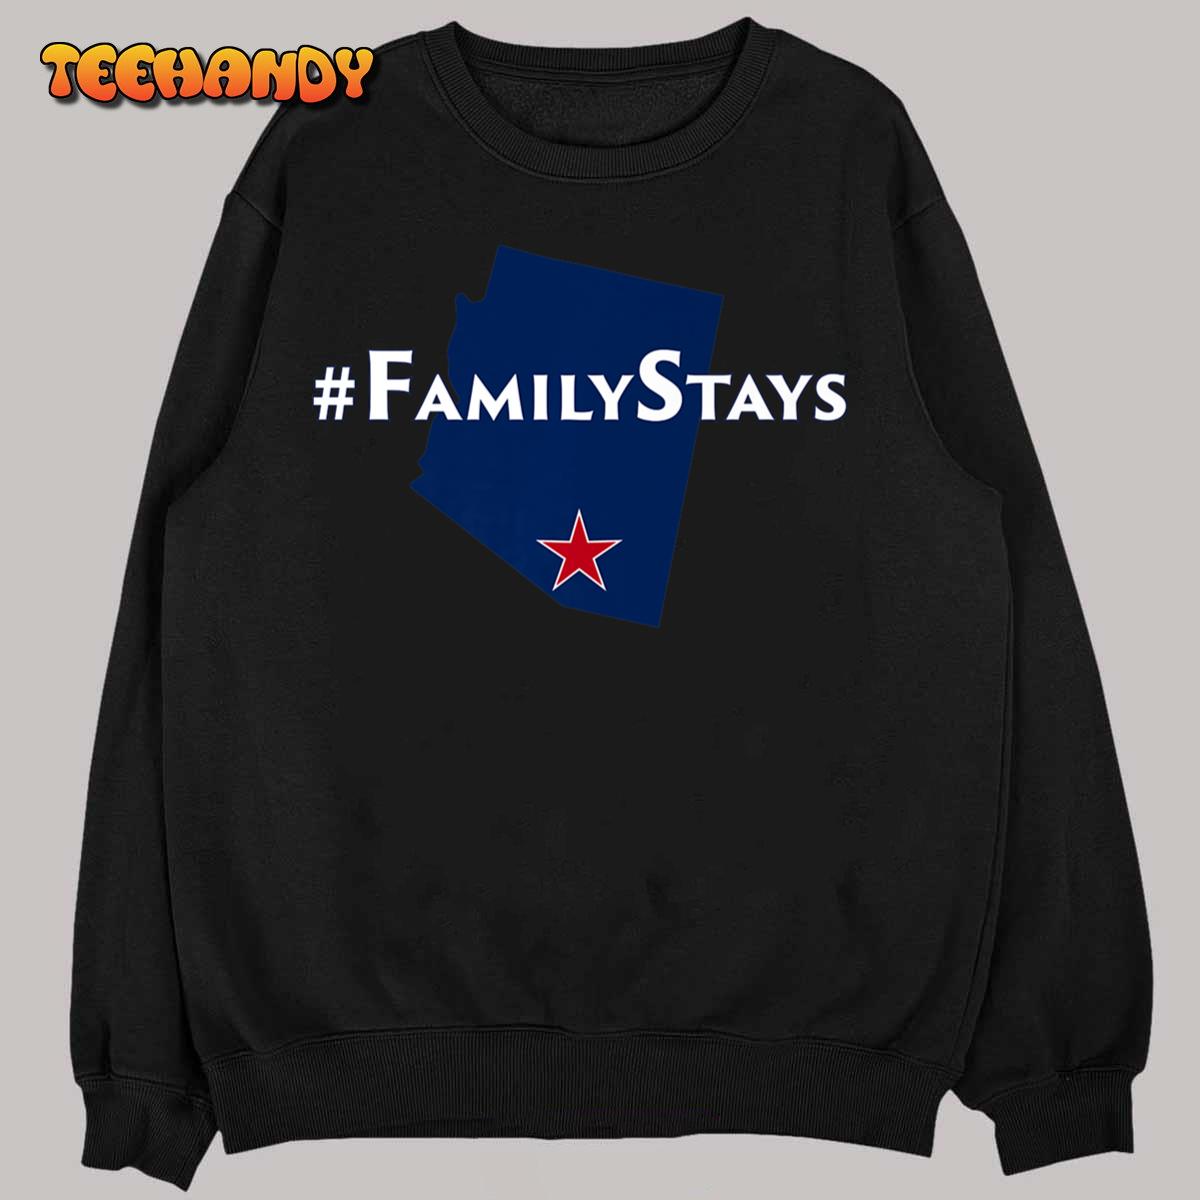 Arizona is Family - Arizona Family Stays Premium T-Shirt